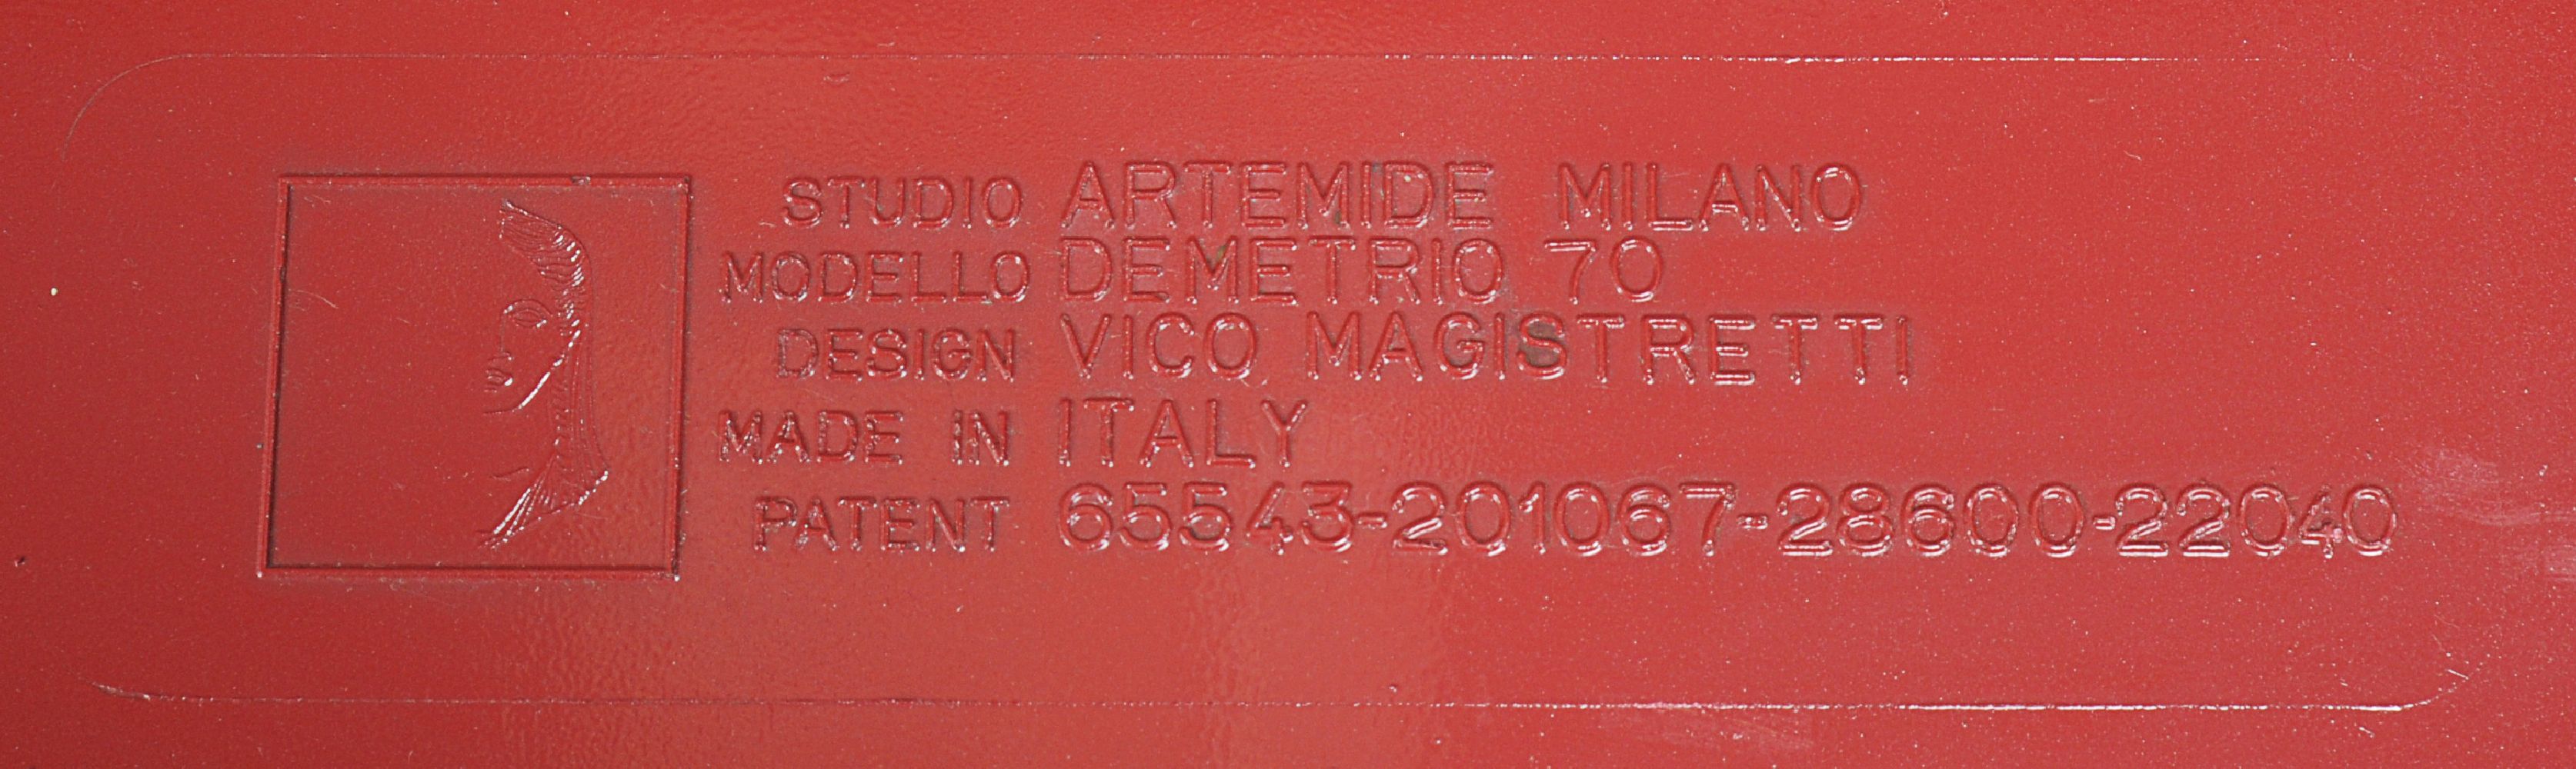 Vico Magistretti for Artemidi, a set of ten Vicario chairs - Image 4 of 5